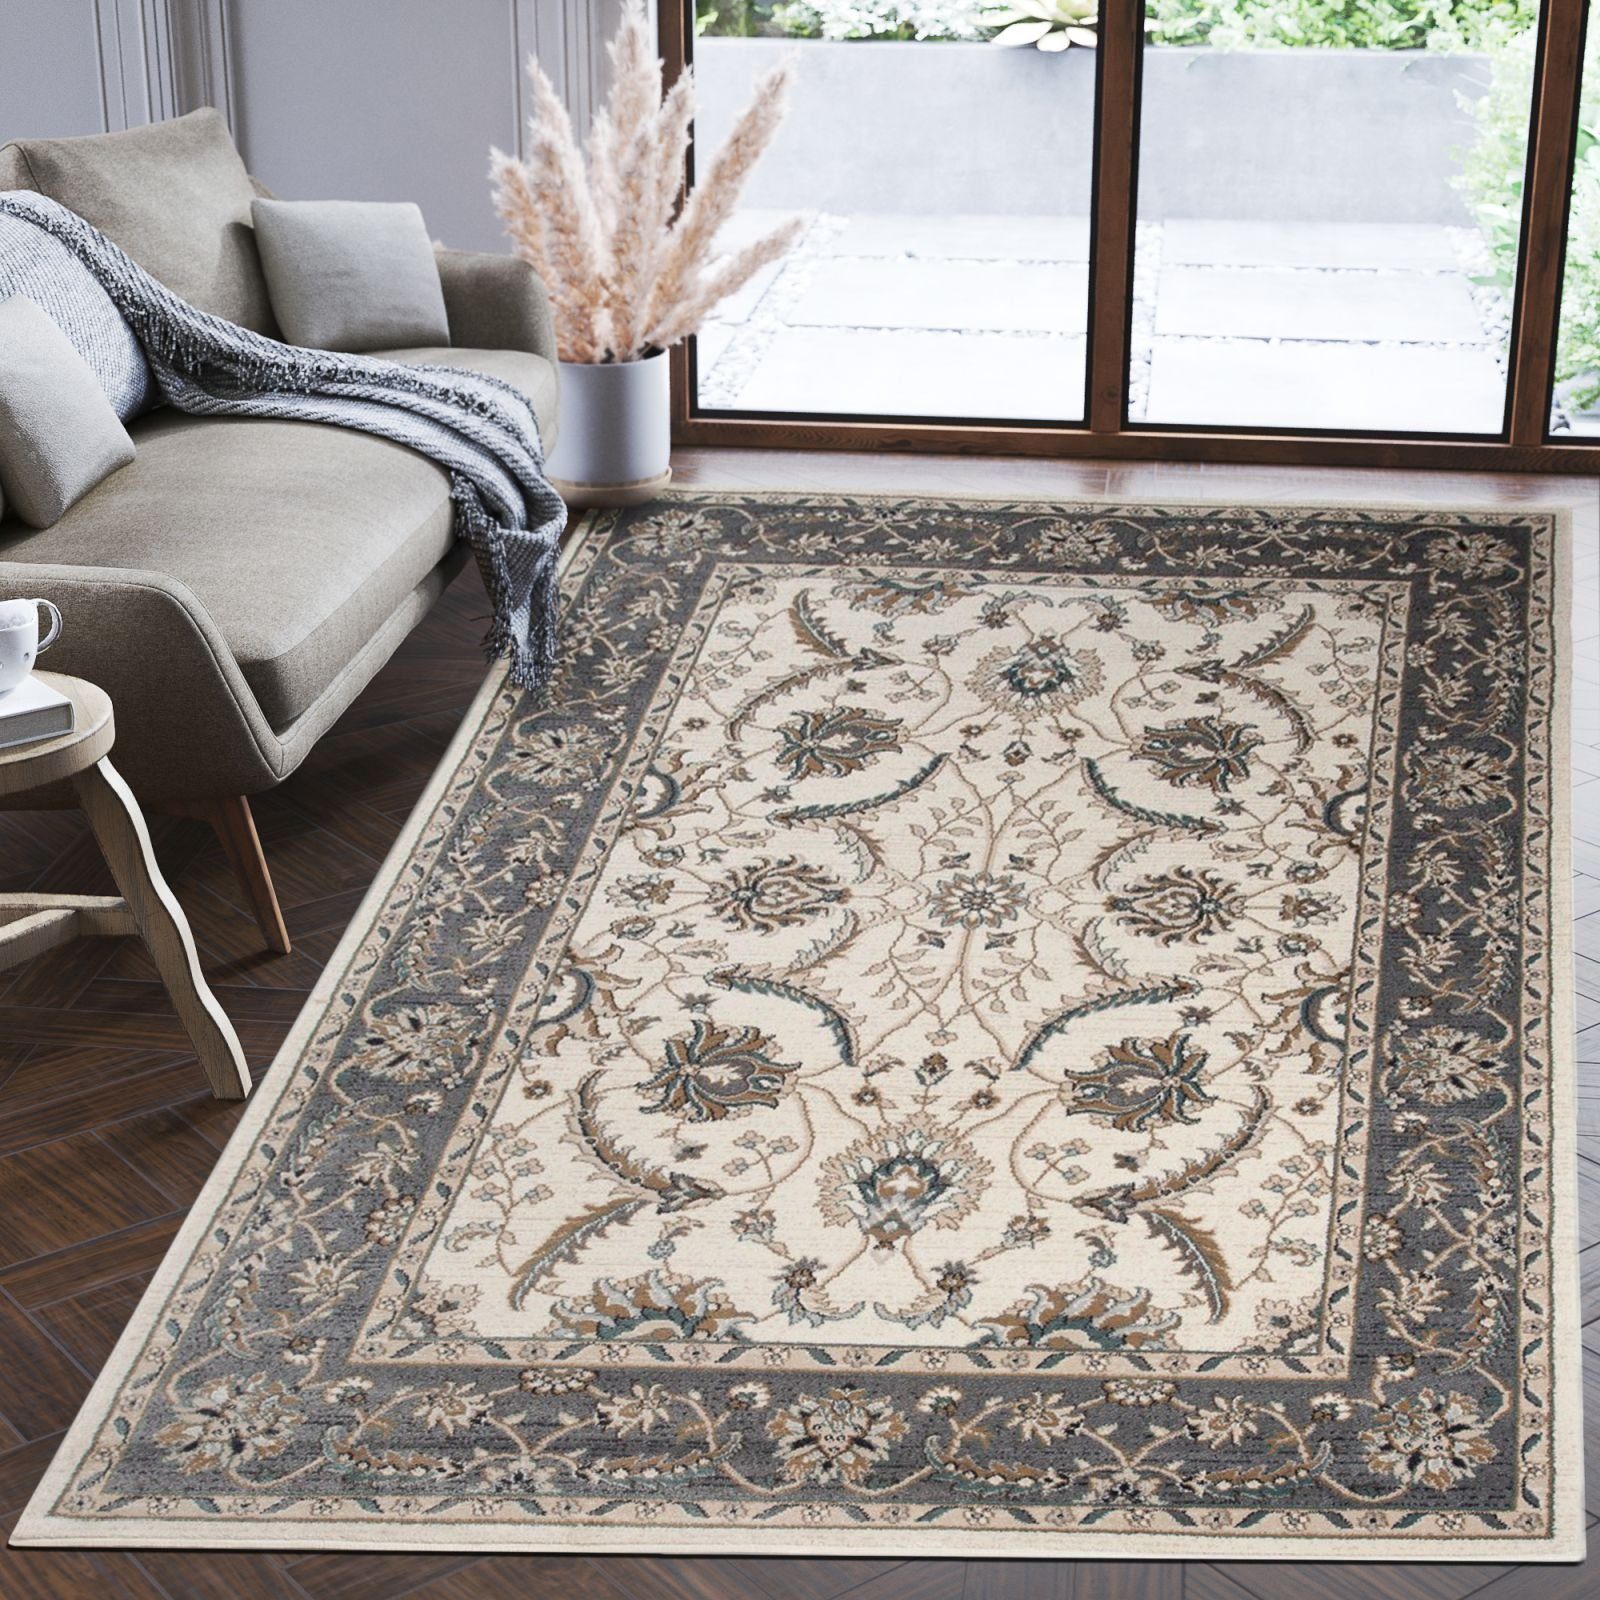 Orientteppich Oriente Teppich - Traditioneller Teppich Orient Creme Grau, Mazovia, 80 x 150 cm, Geeignet für Fußbodenheizung, Pflegeleicht, Wohnzimmerteppich